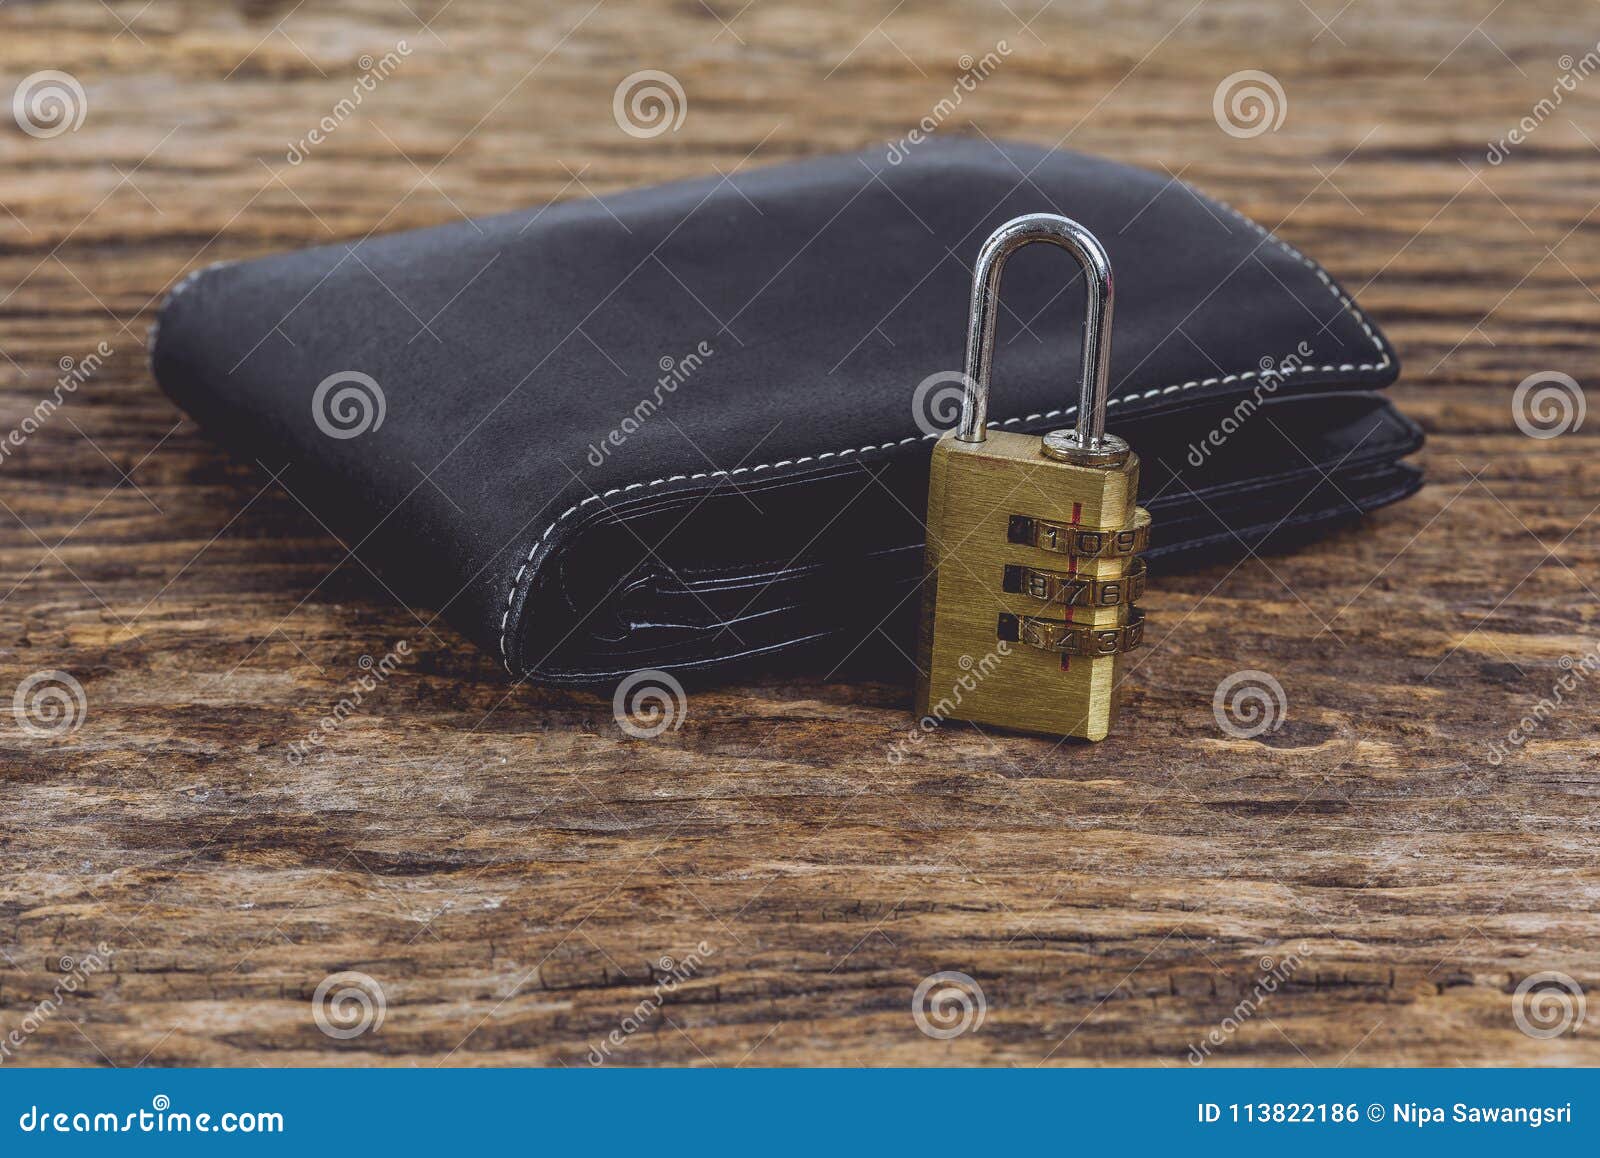 wallet metal security lock pass code password wo wallet metal security lock pass code password 113822186